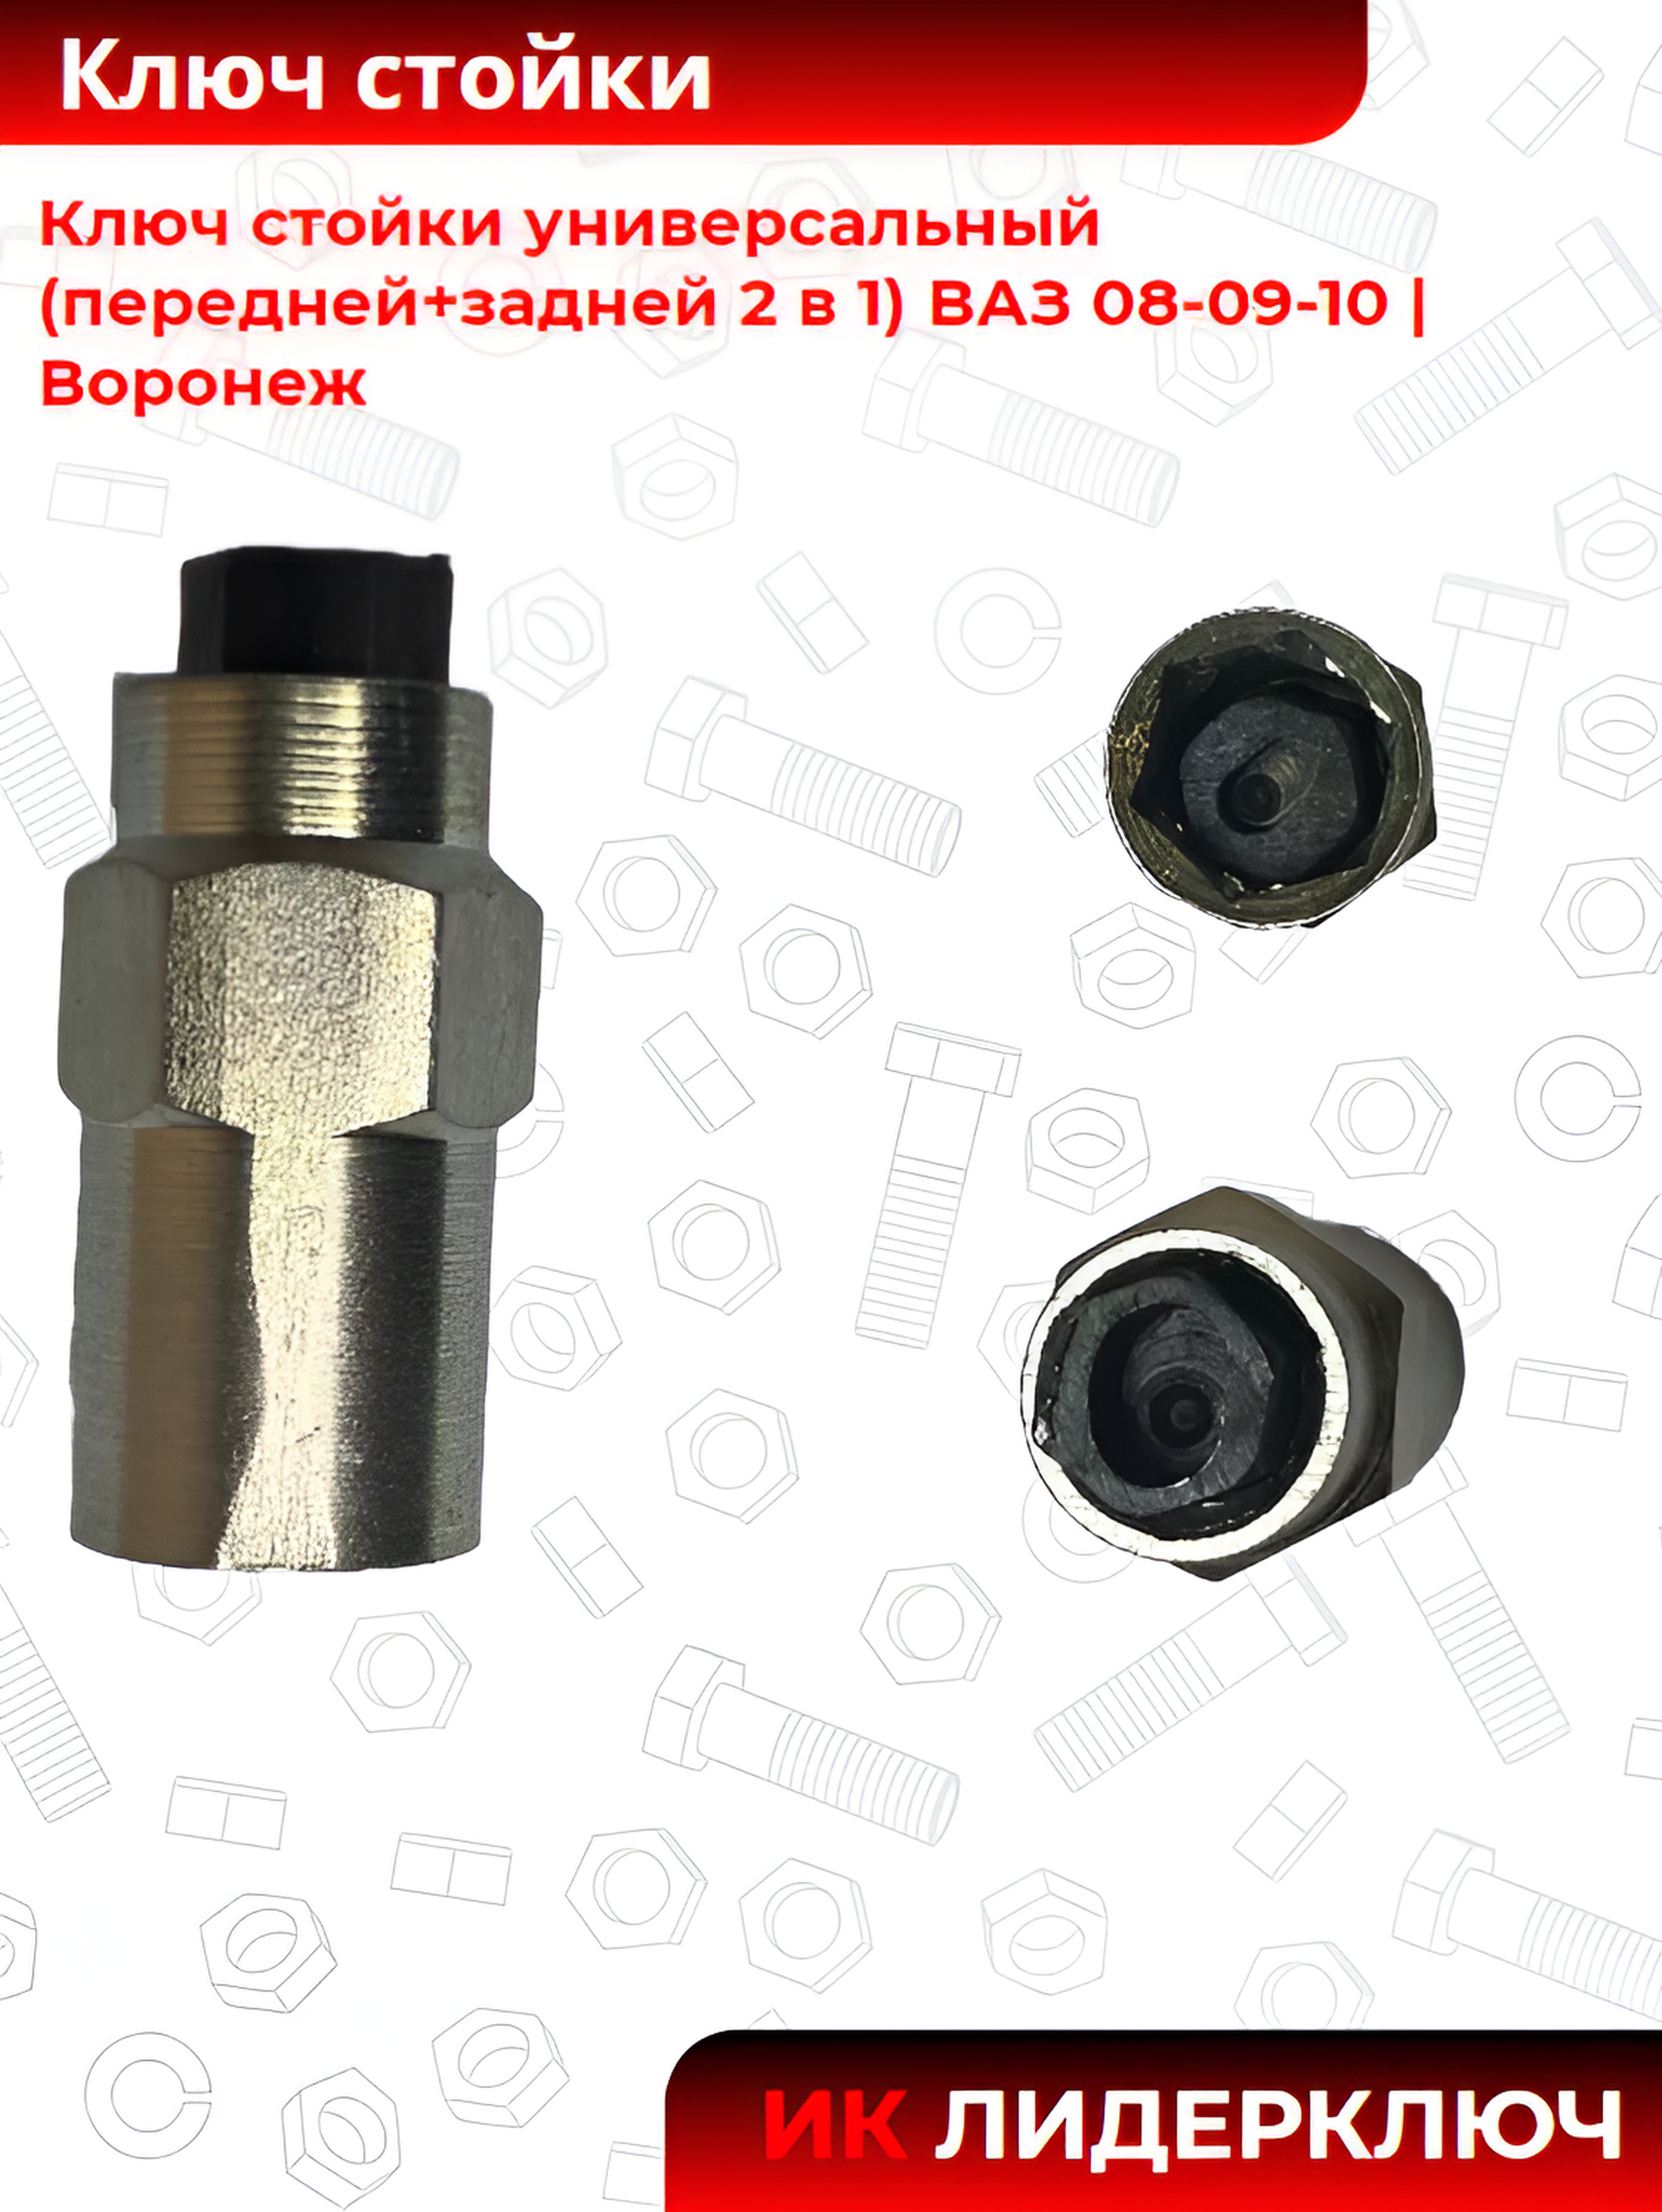 Ключ стойки универсальный (передней+задней 2 в 1) ВАЗ 08-09-10 |Воронеж